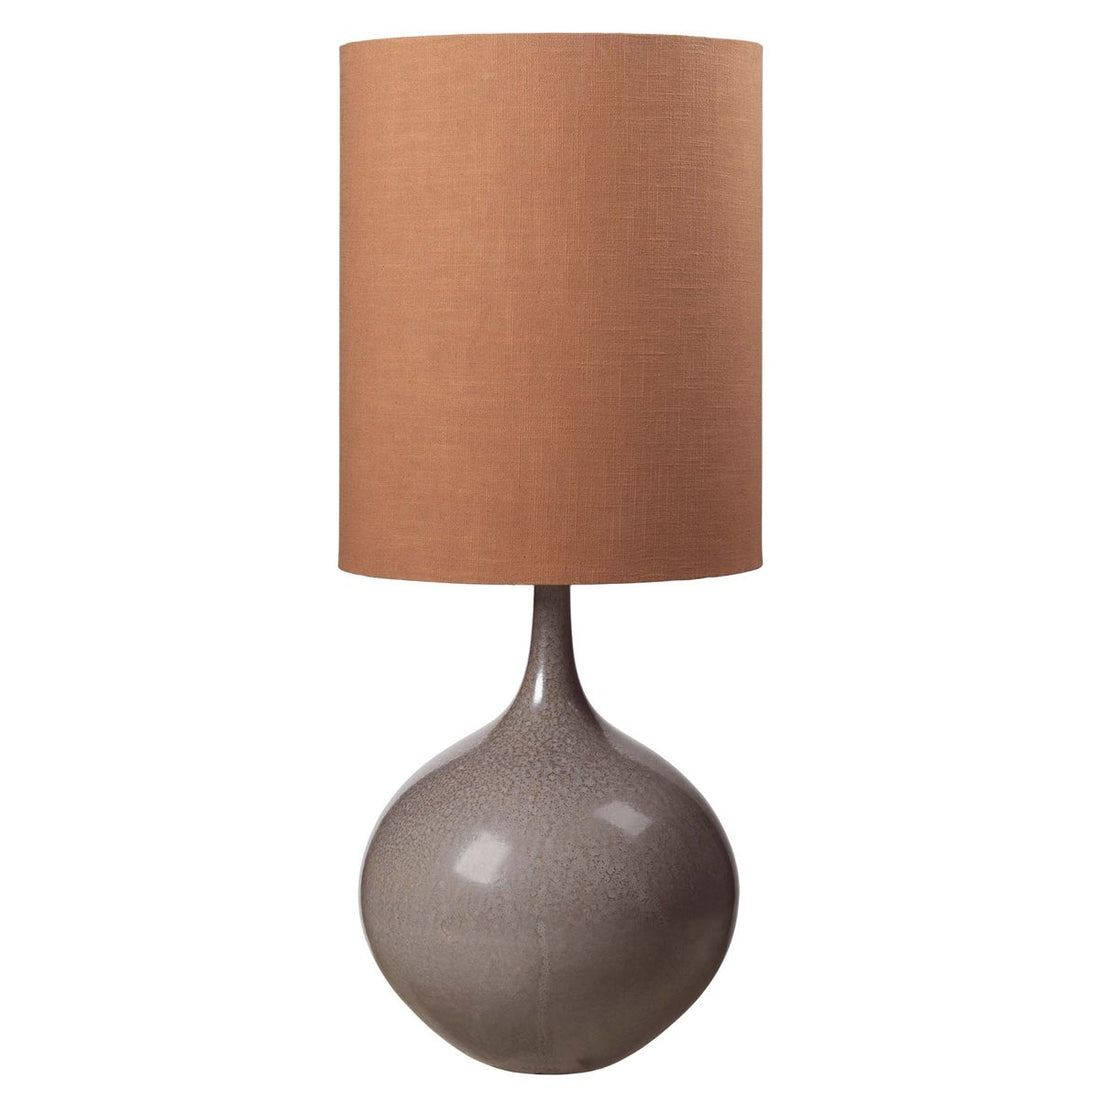 Gemütliche lebende Bella -Keramik -Lampe W. Schatten - Kit W. Verbrannter orangefarbener Schatten